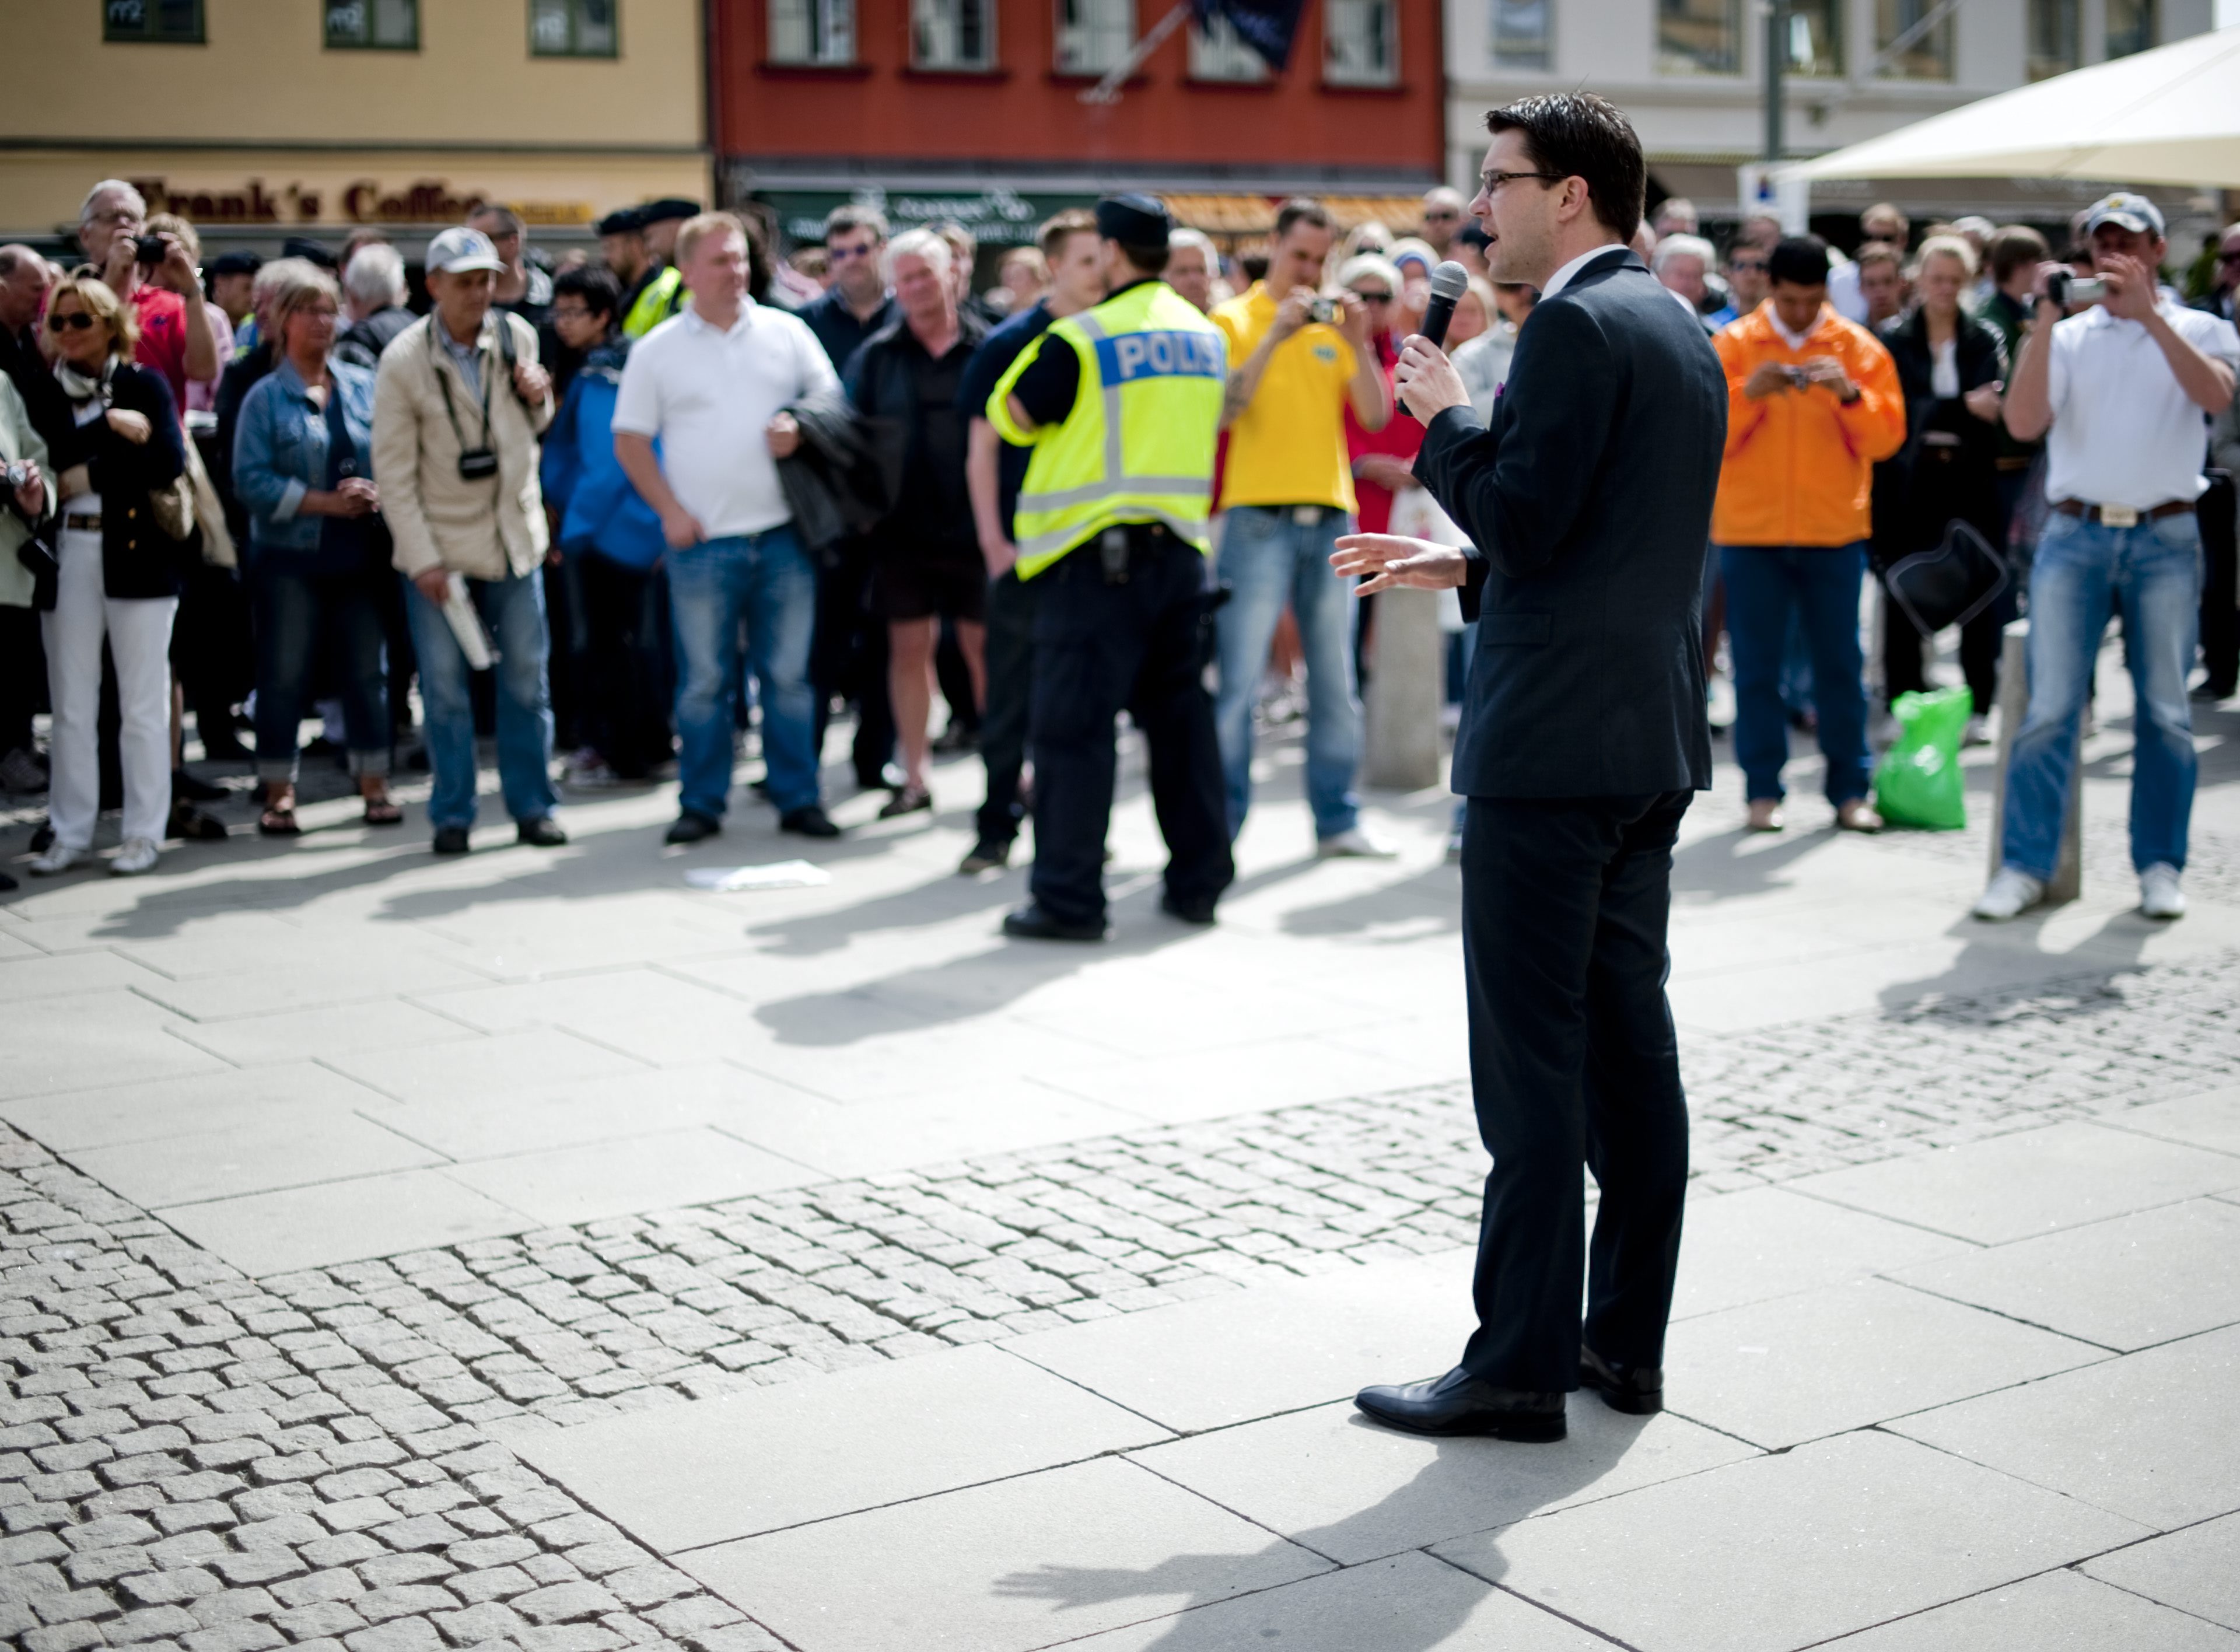 Sd:s Jimmie Åkesson besökte flera gånger Göteborg inför omvalet. Hans parti gjorde ett succéval.